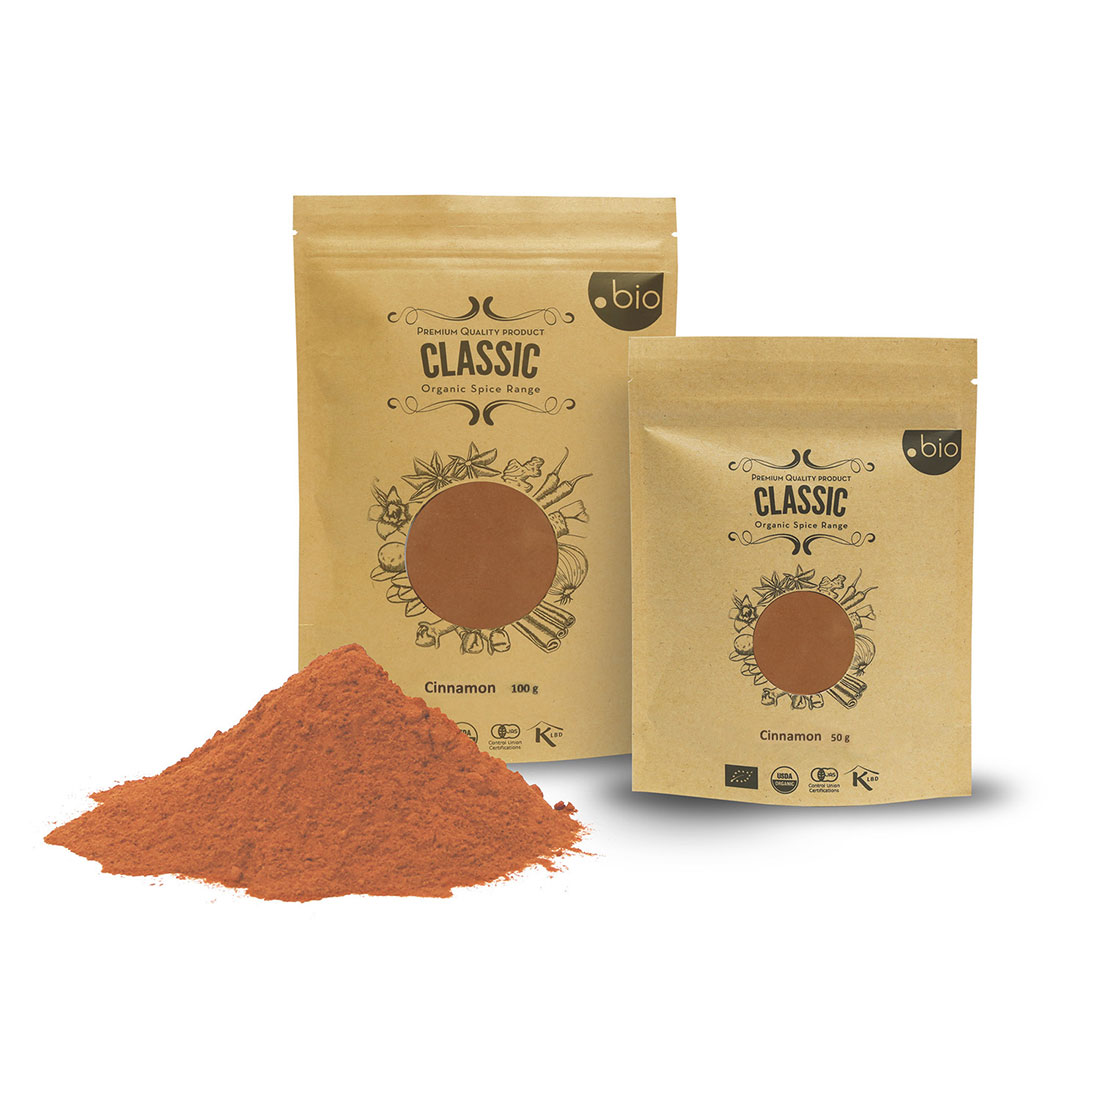 HDDES - Cinnamon Powder